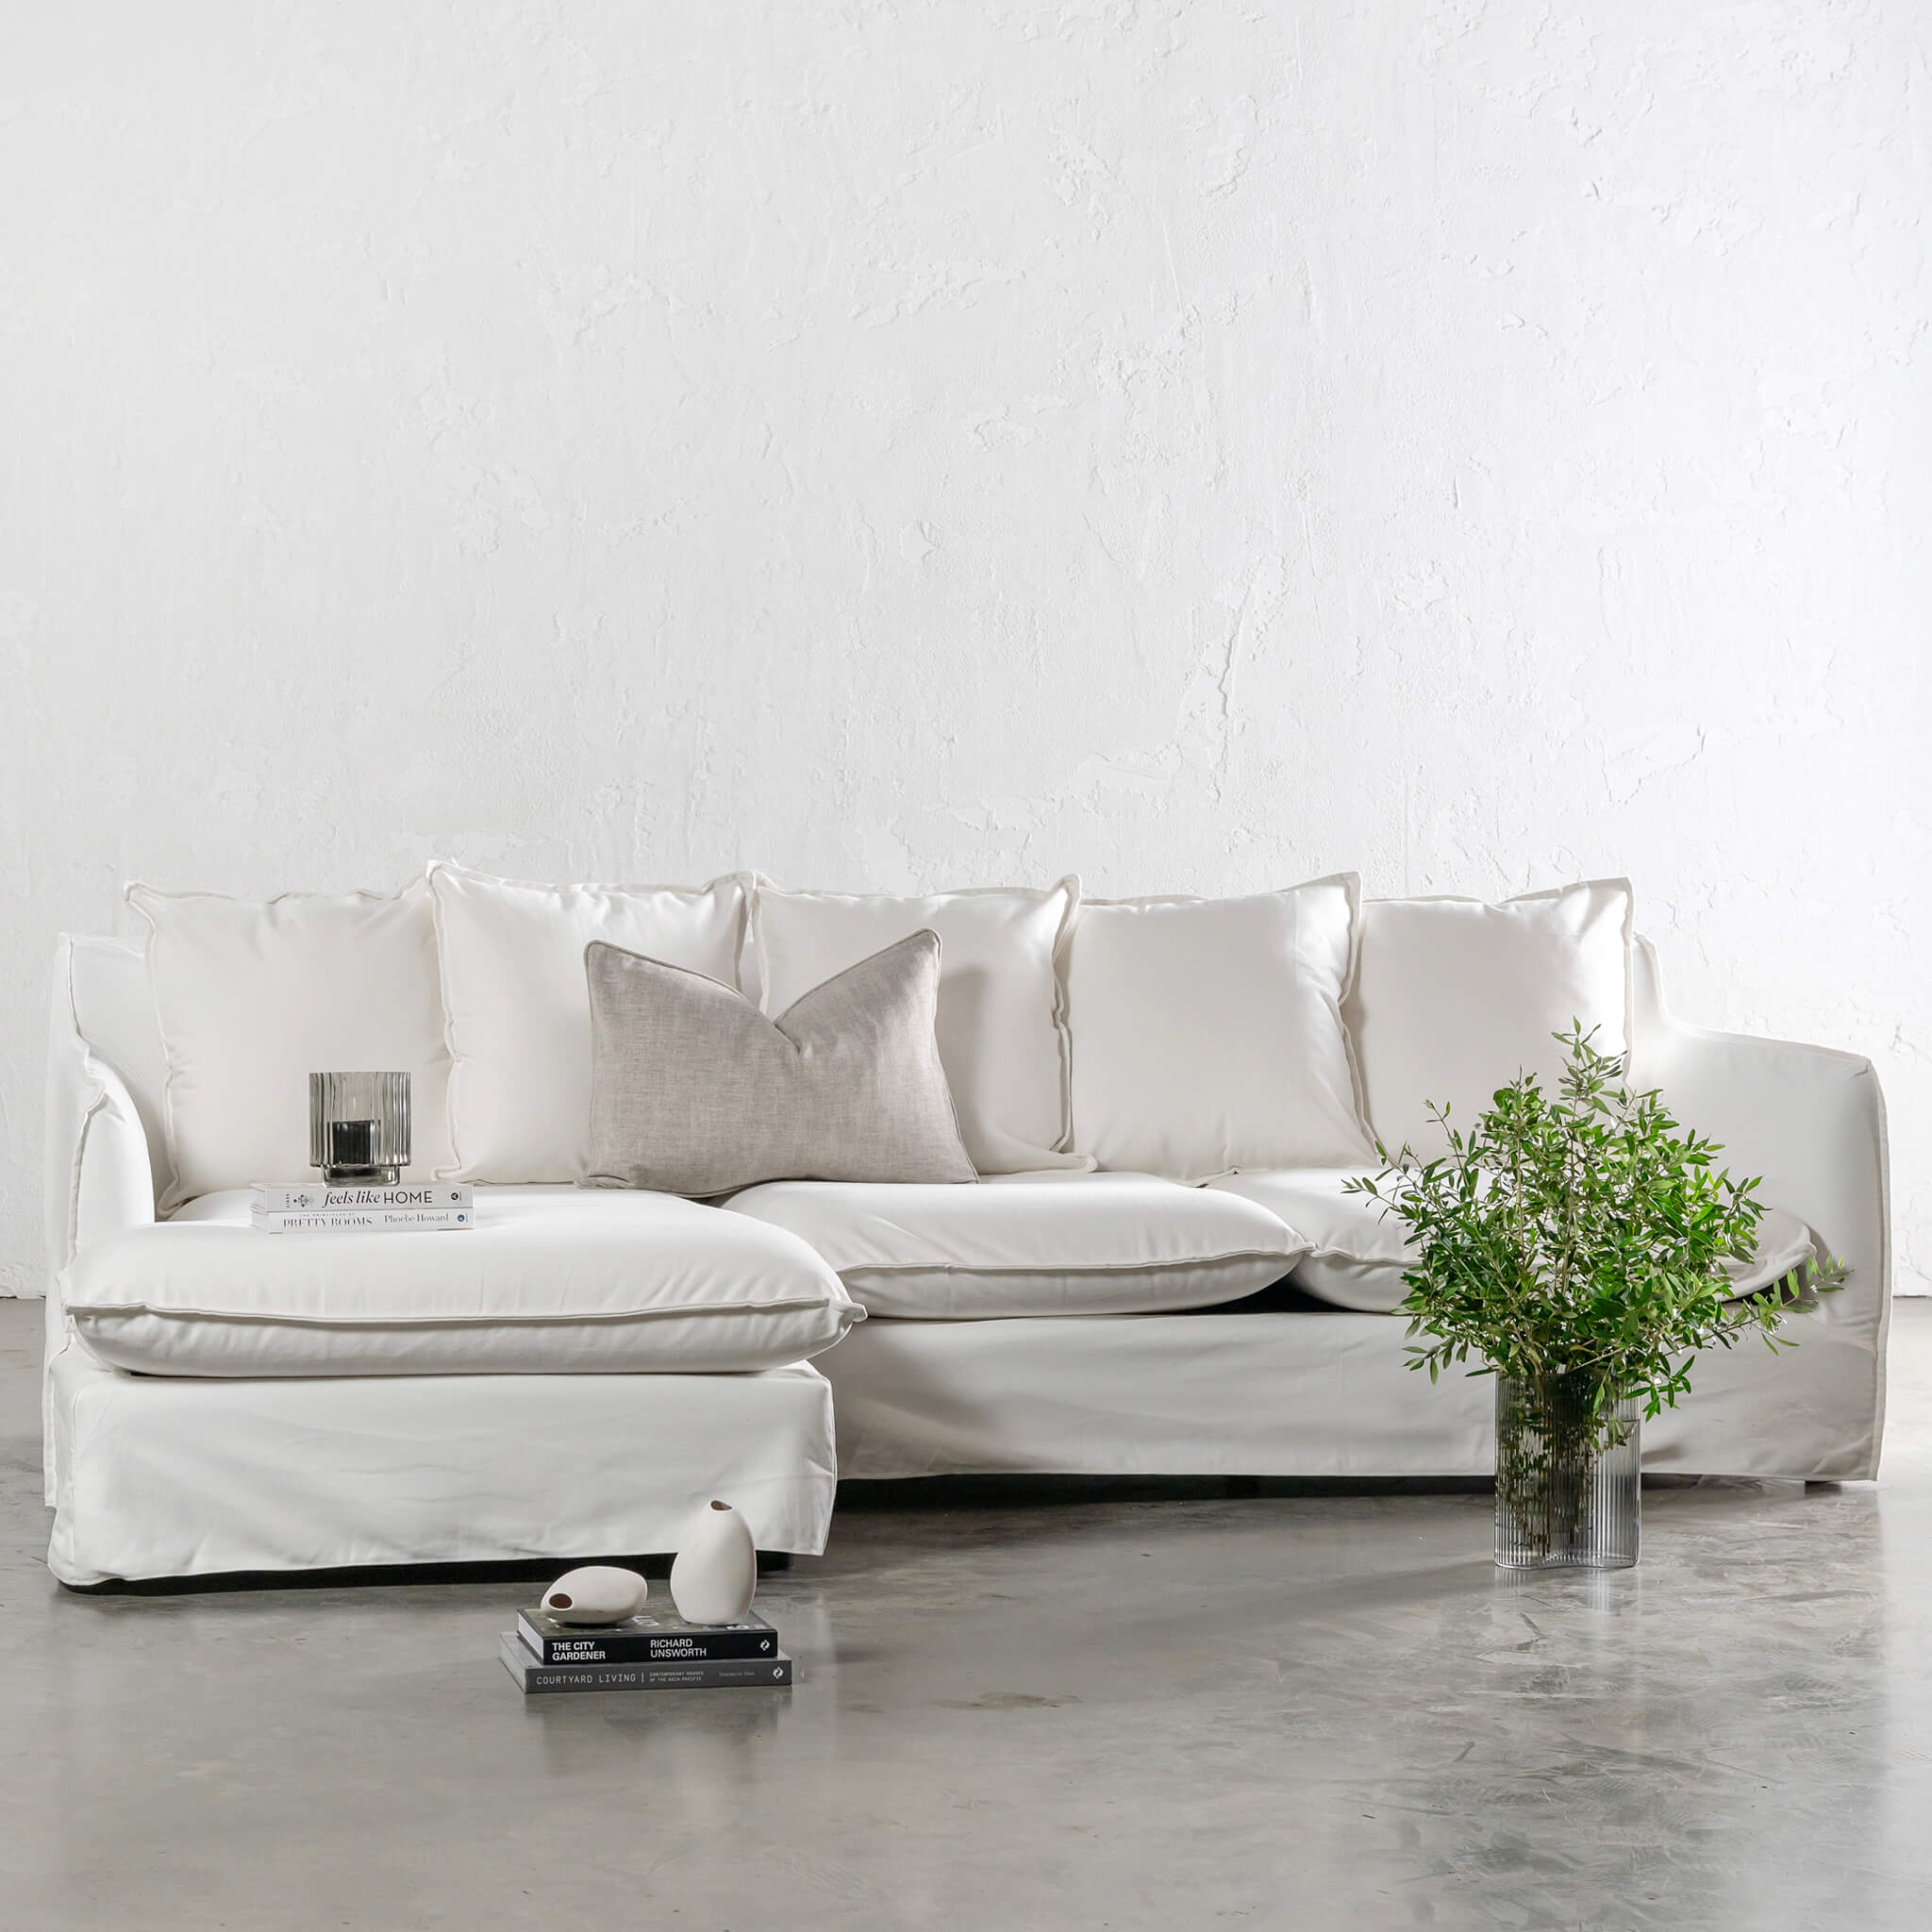 Sleeper Sofa Slipcover in Khaki Denim – The Slipcover Maker